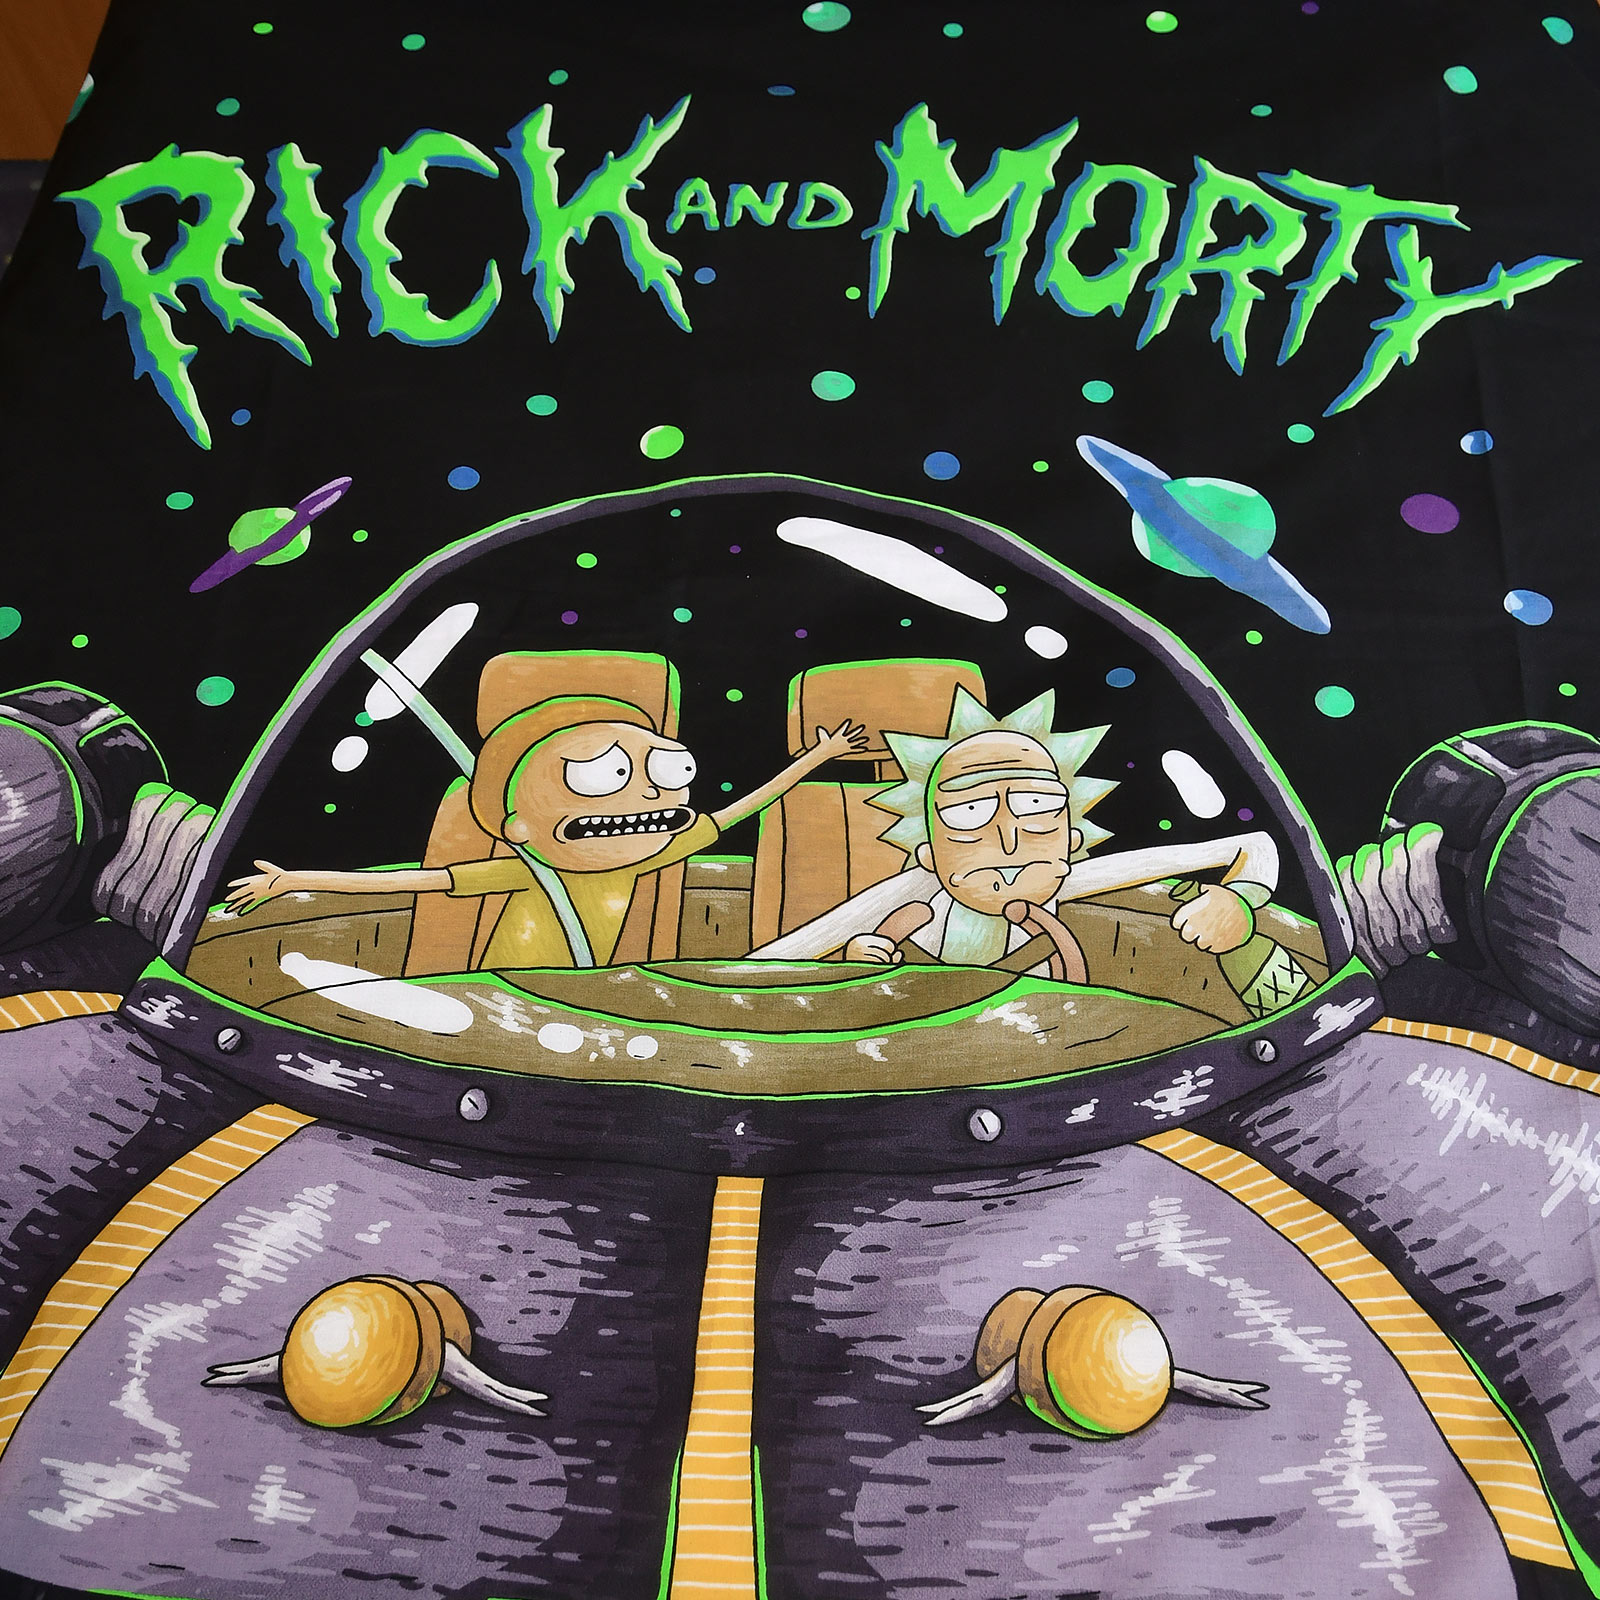 Rick and Morty - Space Cruiser Parure de lit réversible